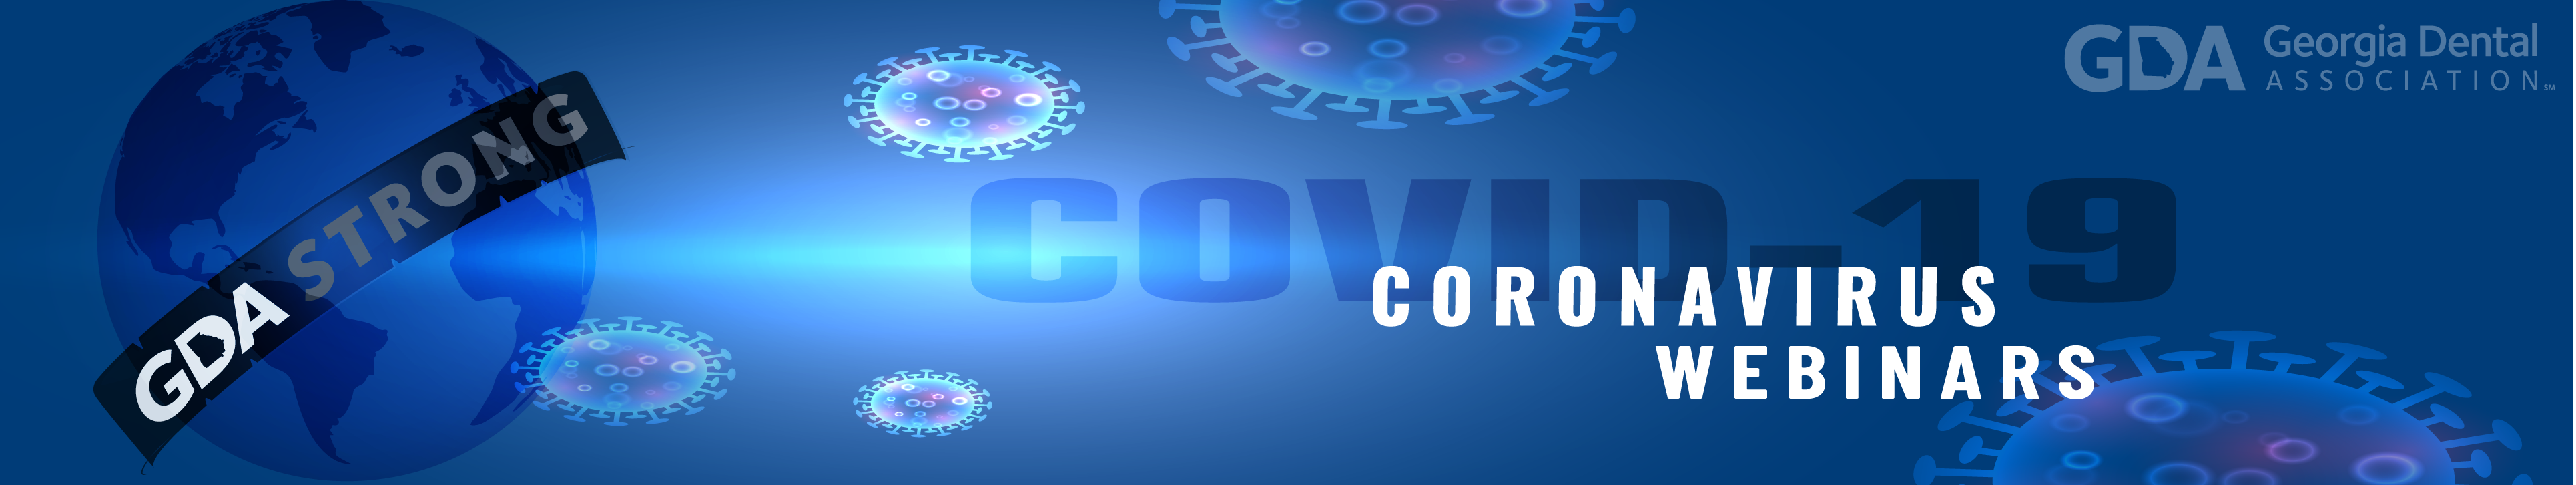 Coronavirus Updates- landing page header